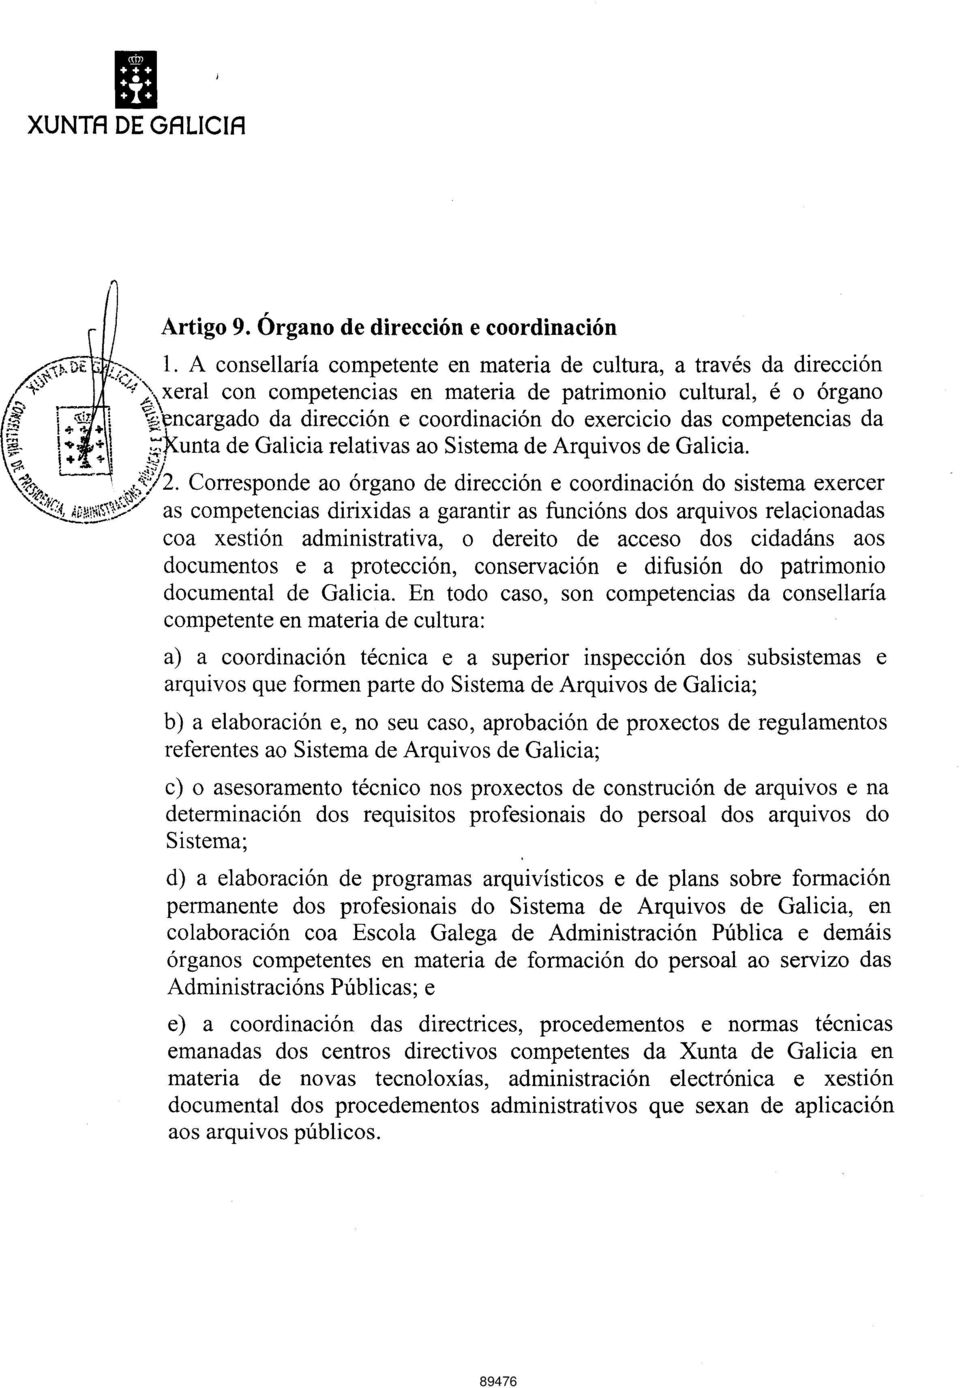 exercicio das competencias da ^ ^unta de Galicia relativas ao Sistema de Arquivos de Galicia. `^o.